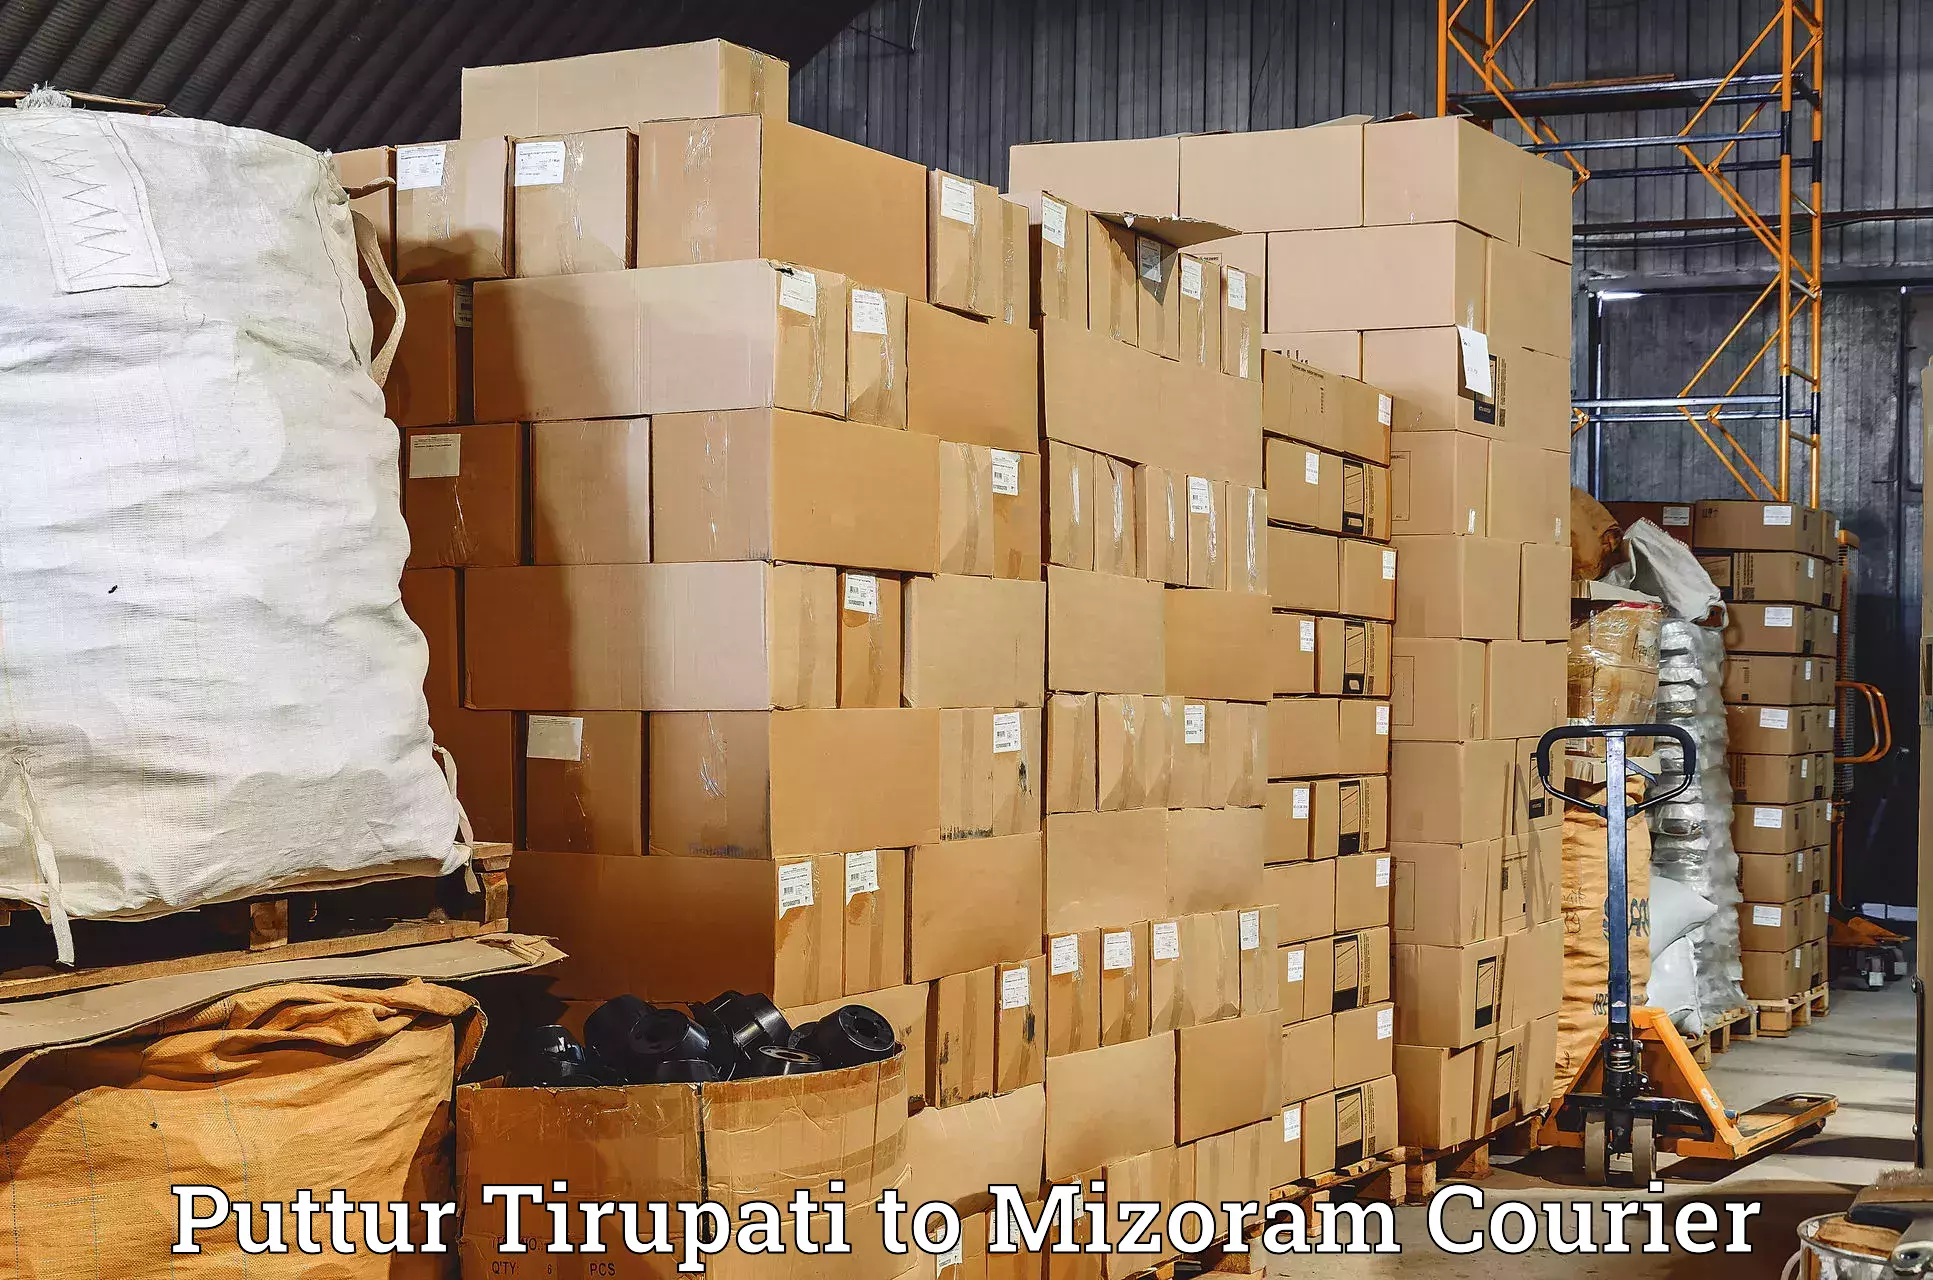 Express logistics providers Puttur Tirupati to Aizawl